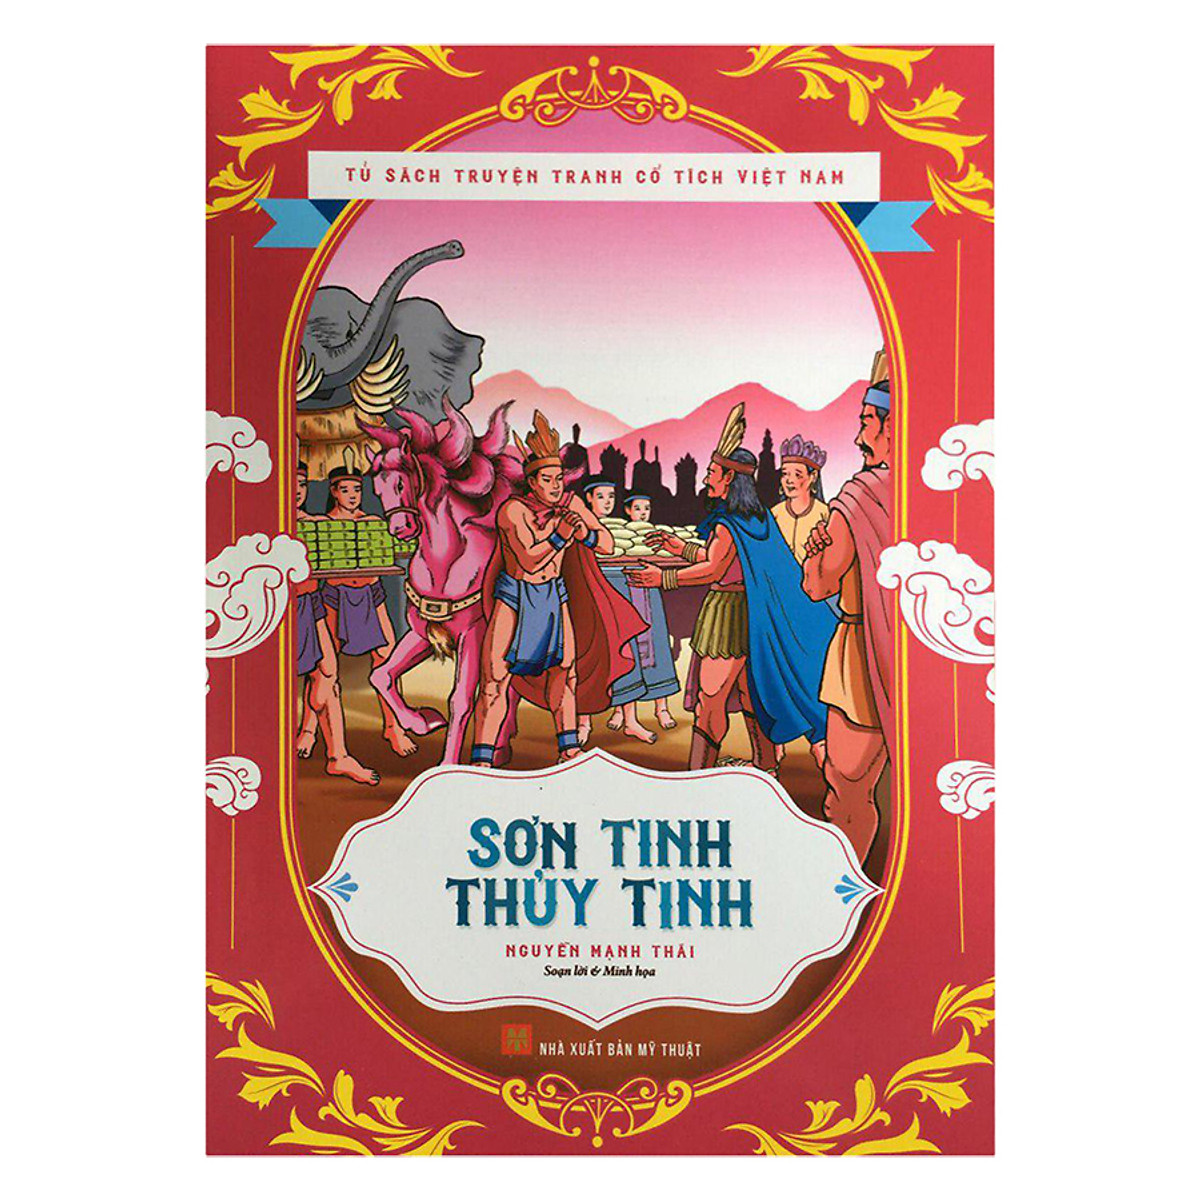 Tủ Sách Truyện Tranh Cổ Tích Việt Nam - Sơn Tinh Thủy Tinh